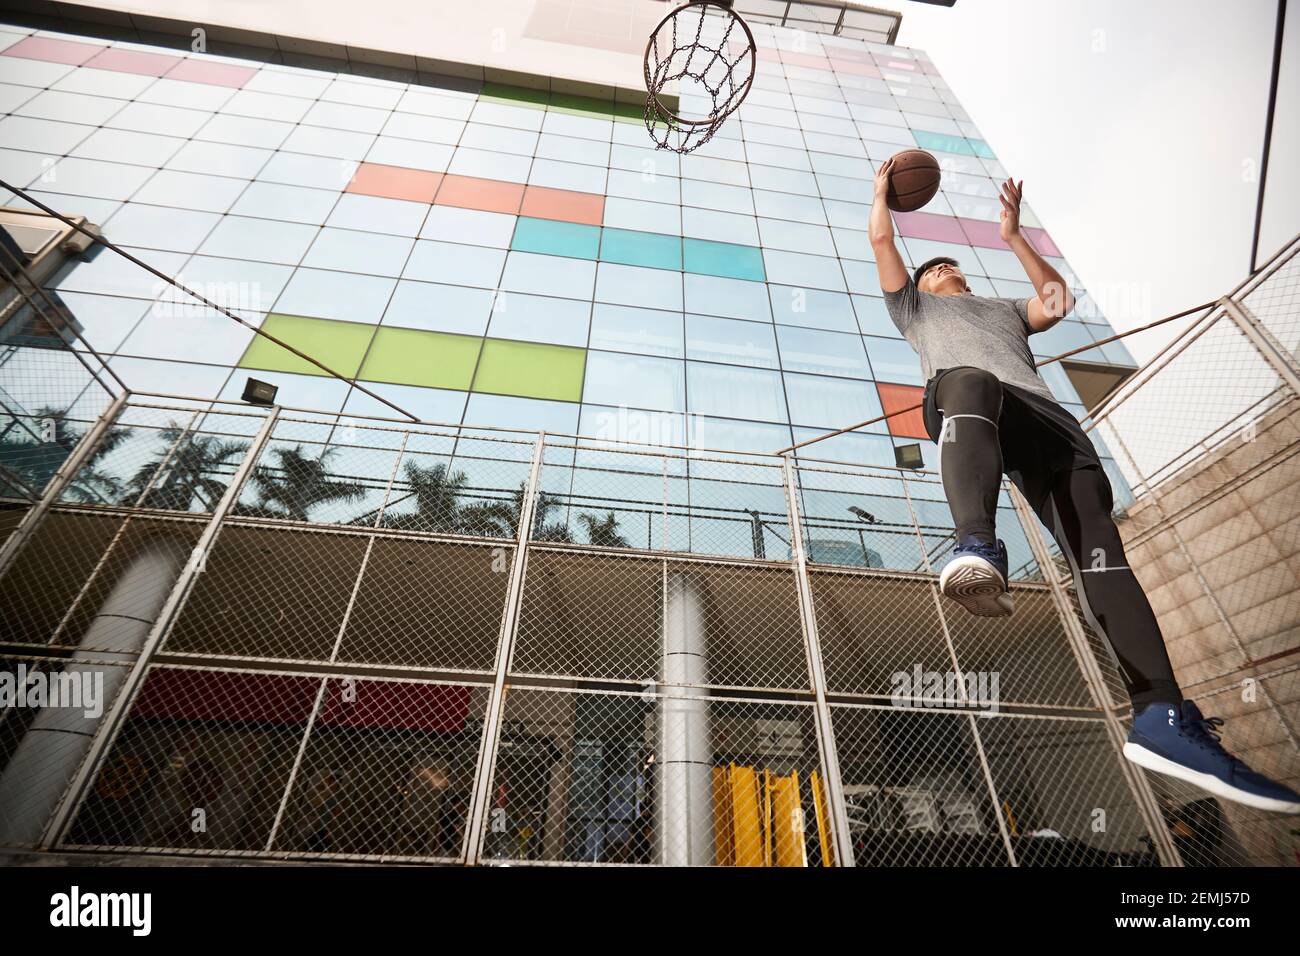 un jeune joueur de basket-ball asiatique va se mettre à pied court extérieur Banque D'Images